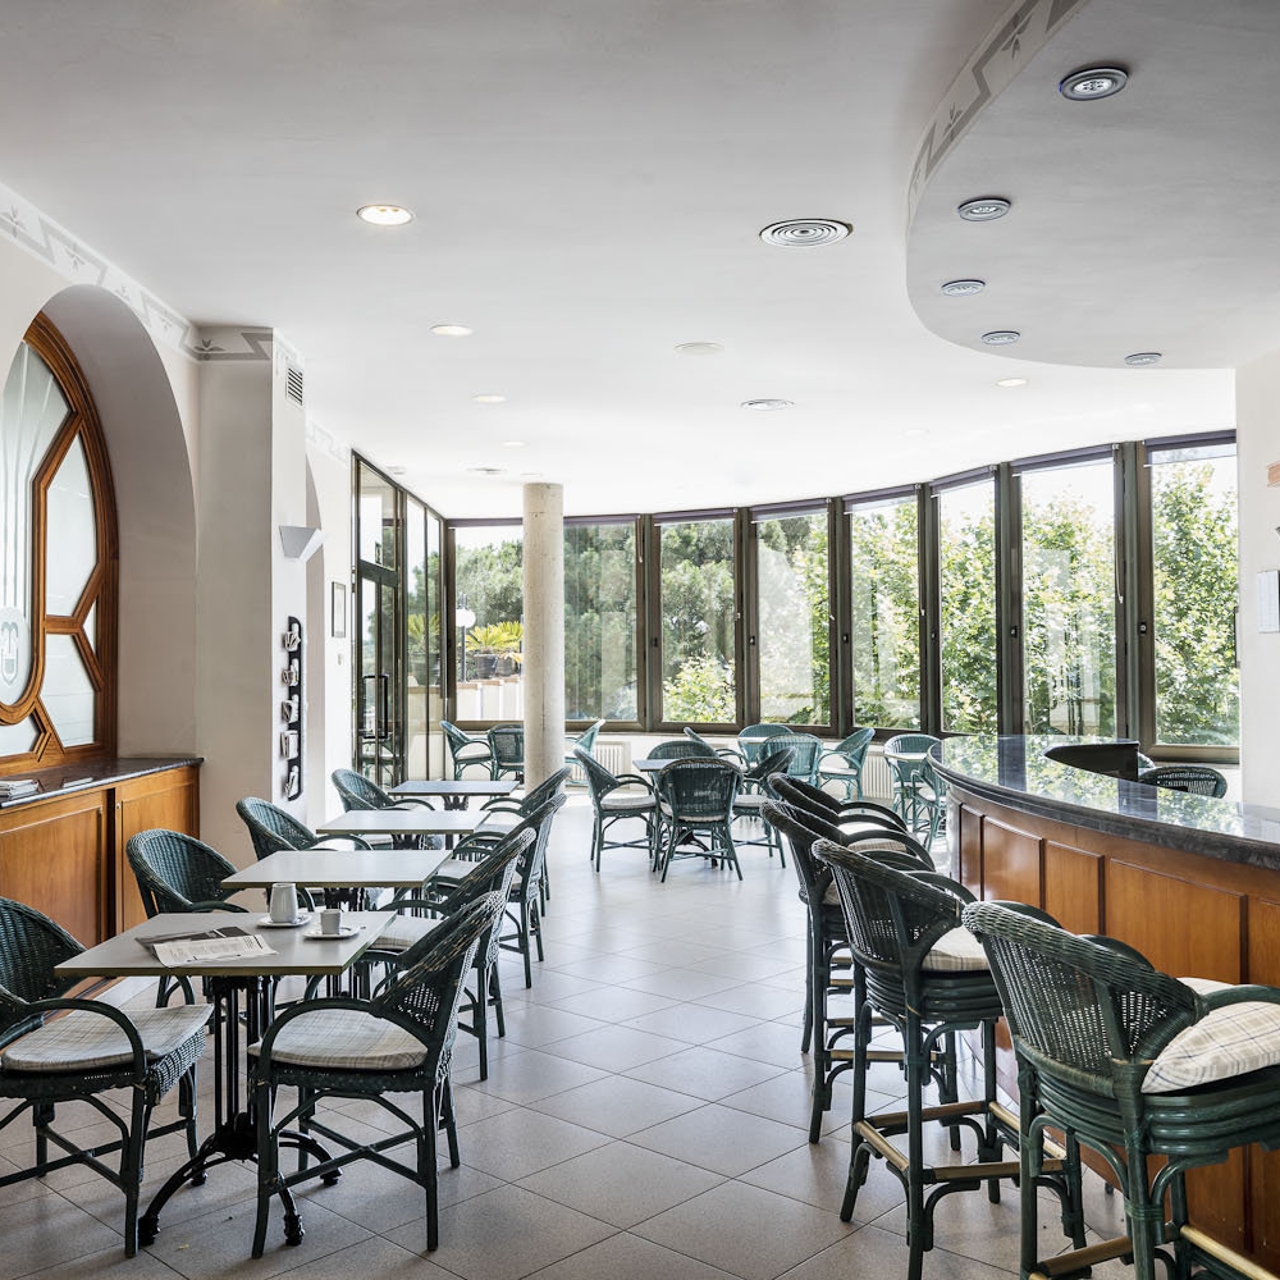 Victoria Balneari Termes Hotel en Caldes de Montbui en HRS con servicios  gratuitos